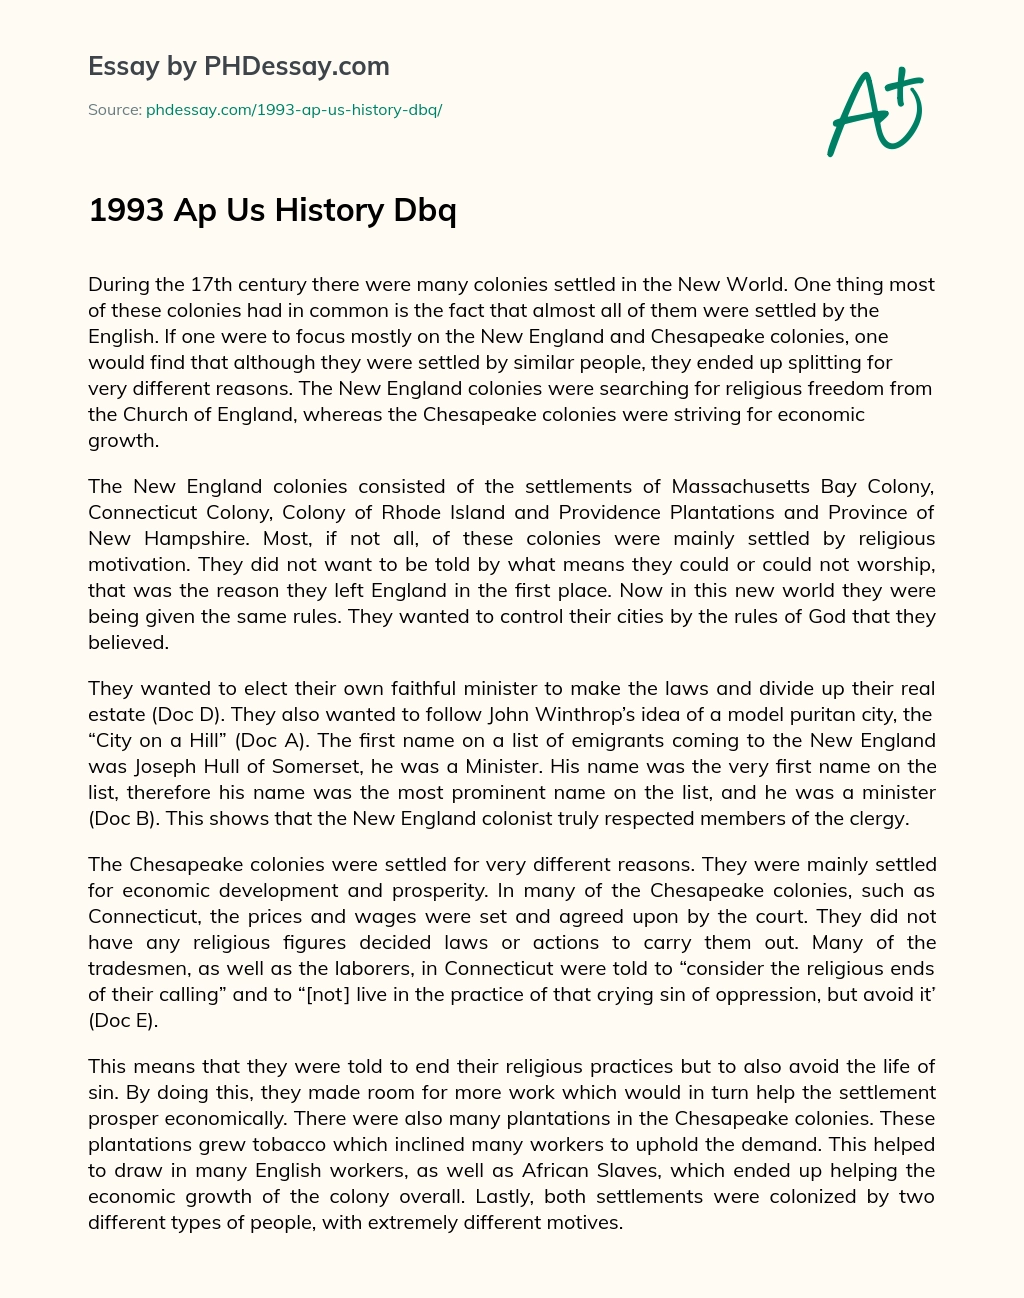 1993 Ap Us History Dbq essay